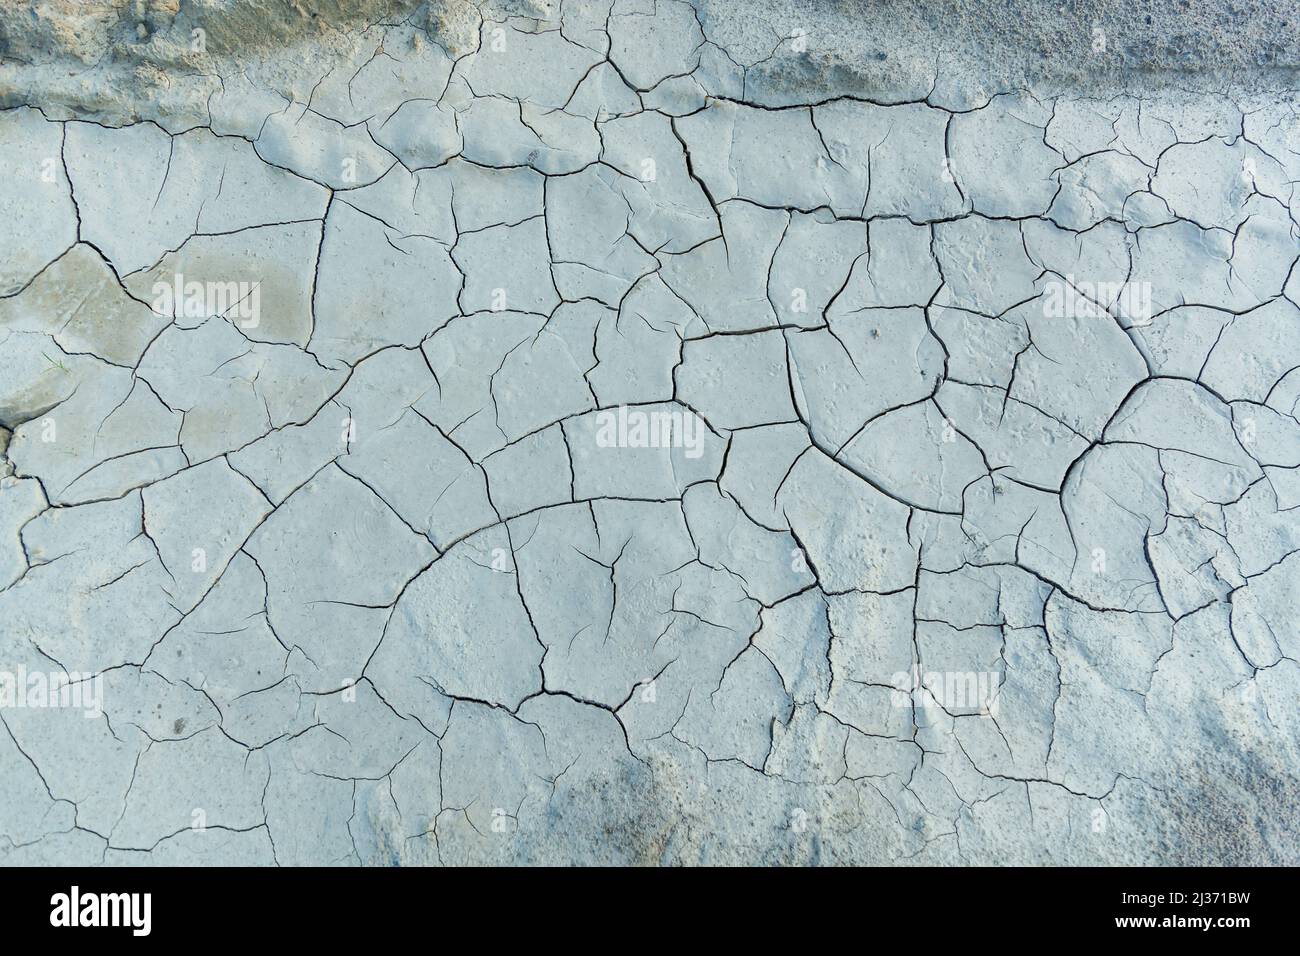 La tierra agrietada de la sequía, arcilla blanca con grietas. Textura y fondo para el diseño Foto de stock